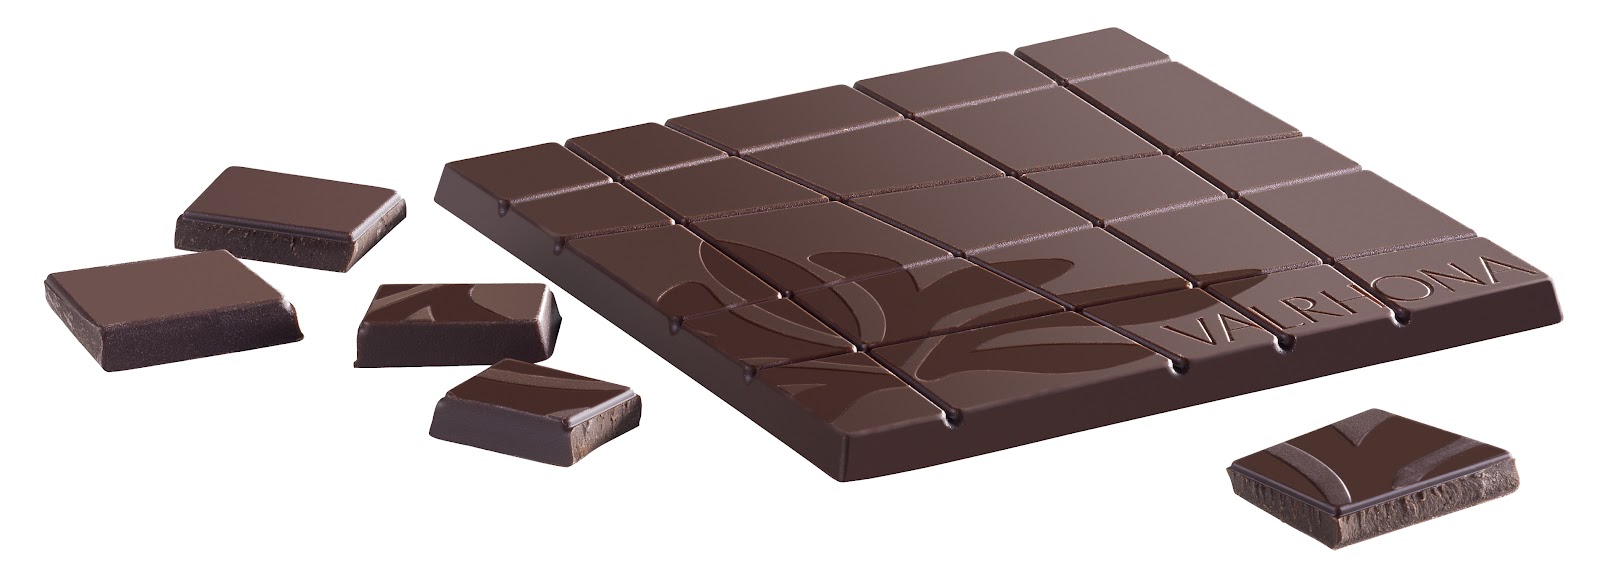 Valrhona Chocolate Where To Buy Australia